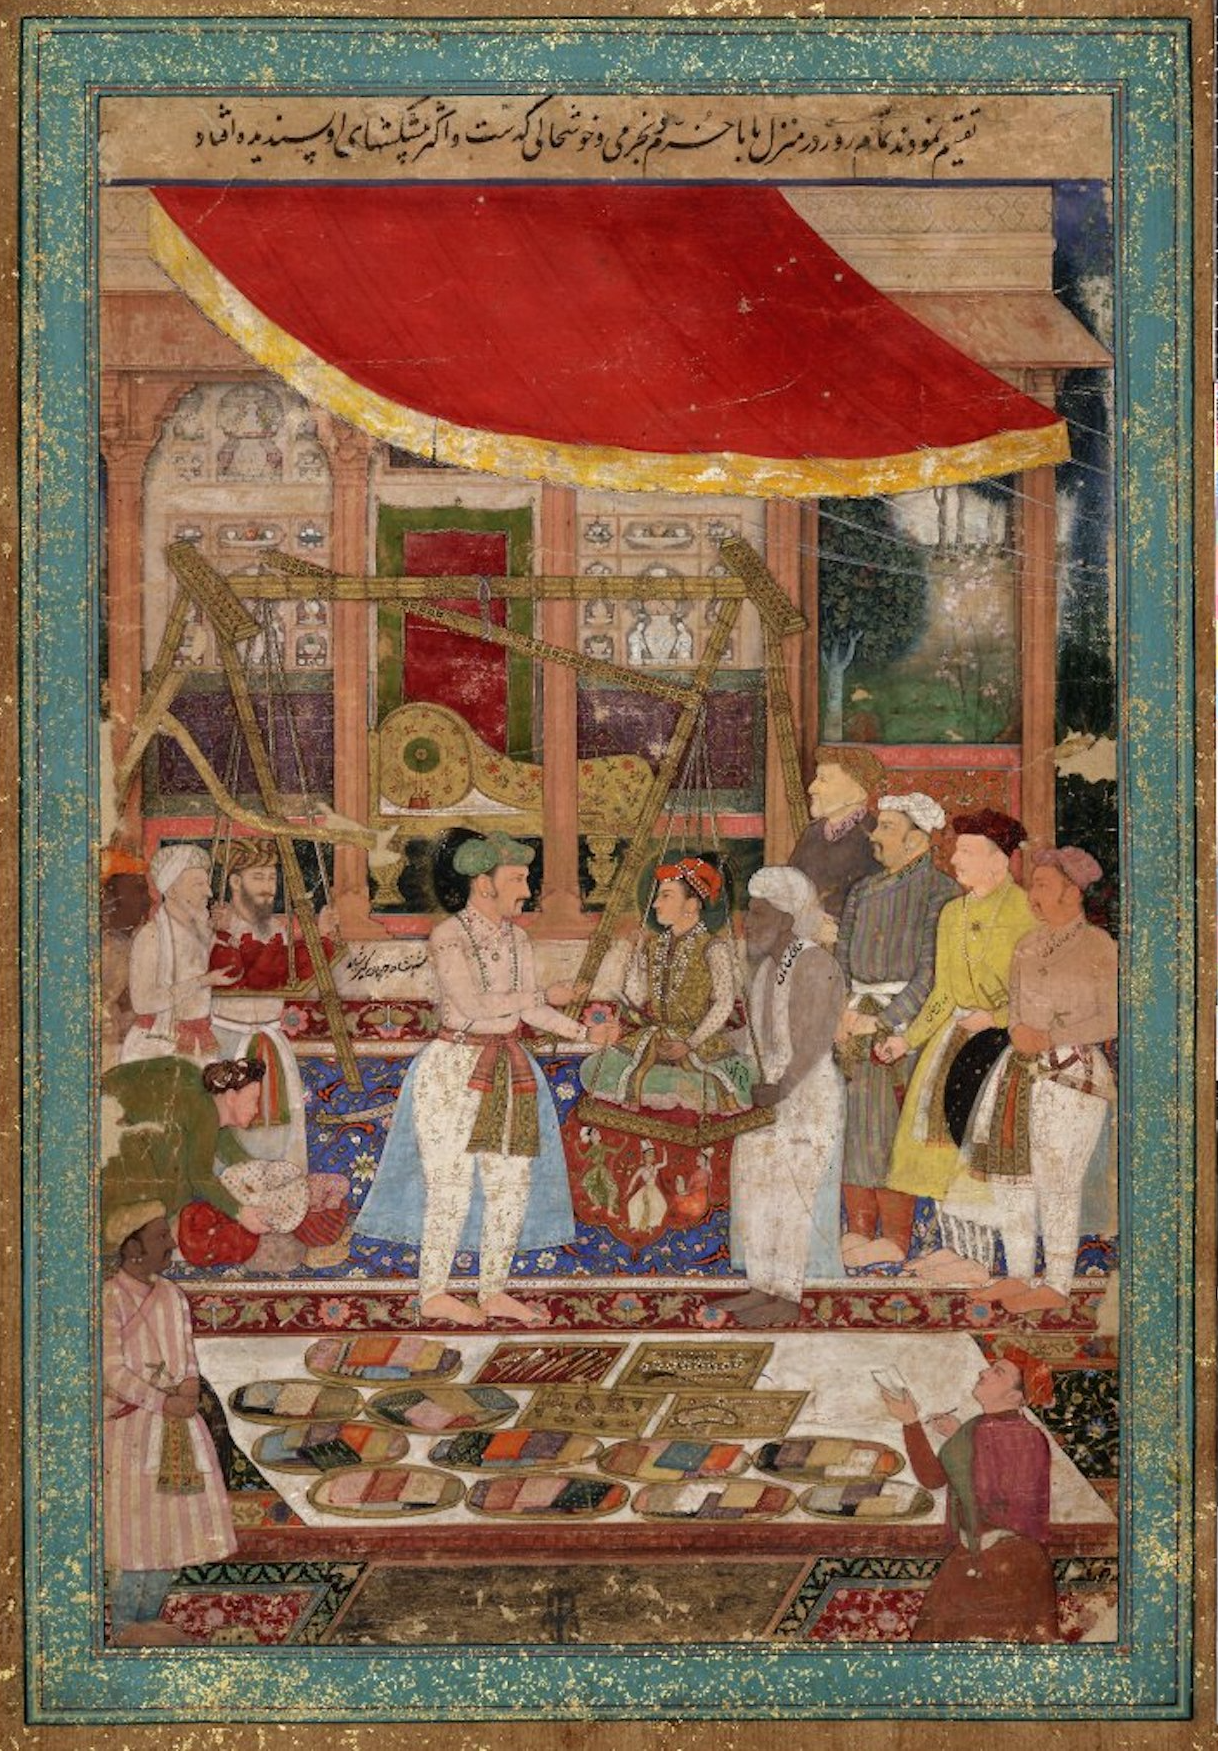 الإمبرطور جهانكير يزن الأمير خُرَم ذهبًا by  Manohar - 1610-1615م - 29.5 x 44.3 سم 